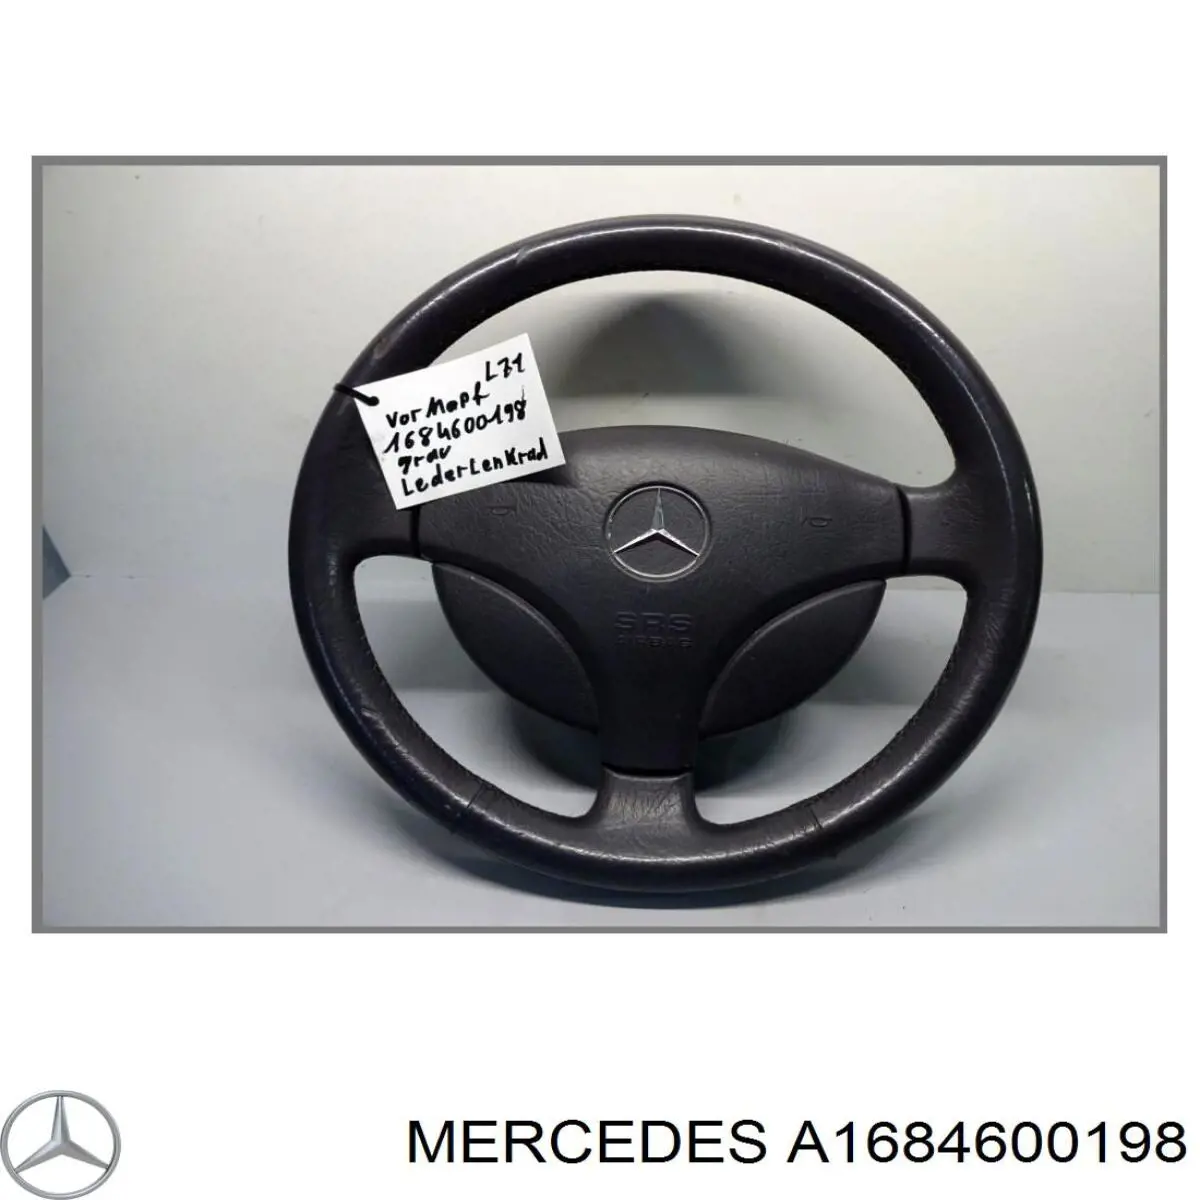 A1684600198 Mercedes airbag del conductor